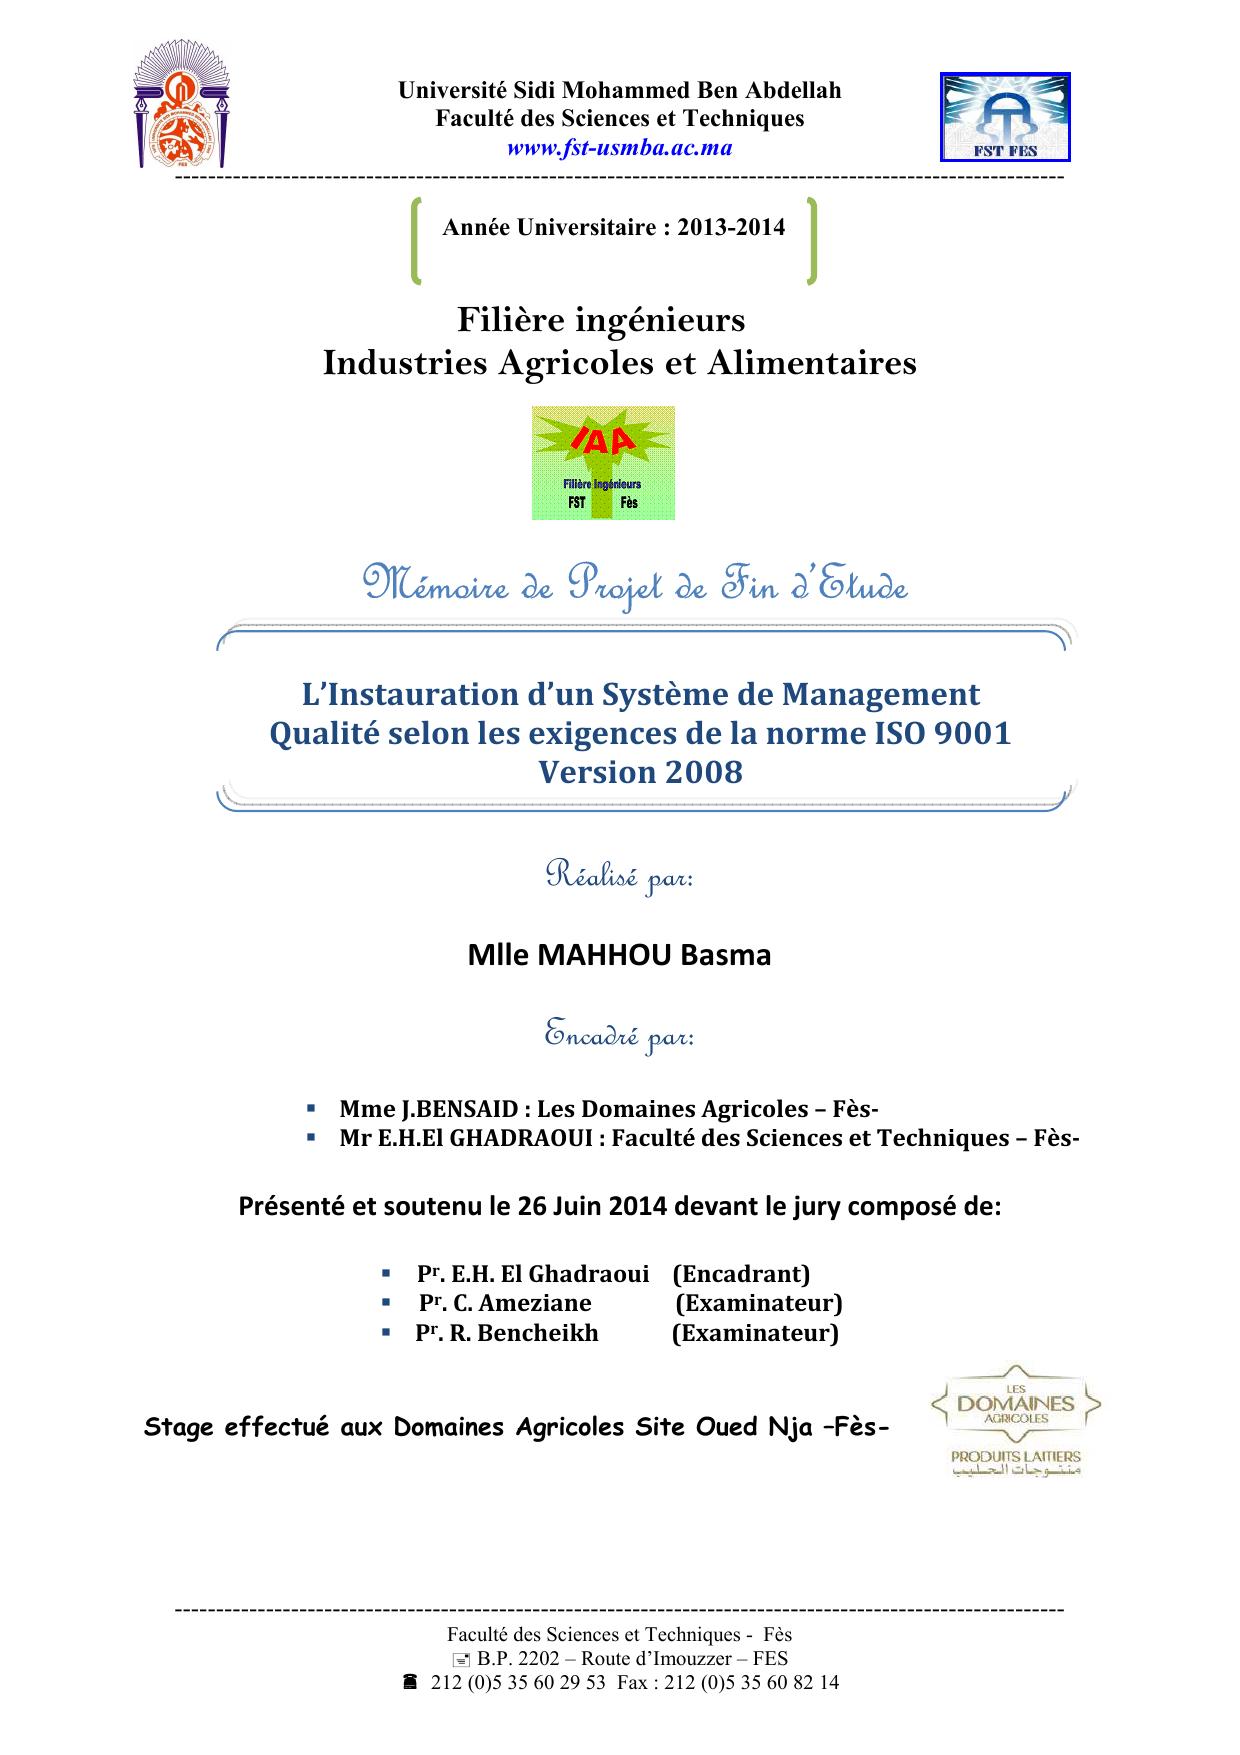 L’Instauration d’un Système de Management Qualité selon les exigences de la norme ISO 9001 Version 2008